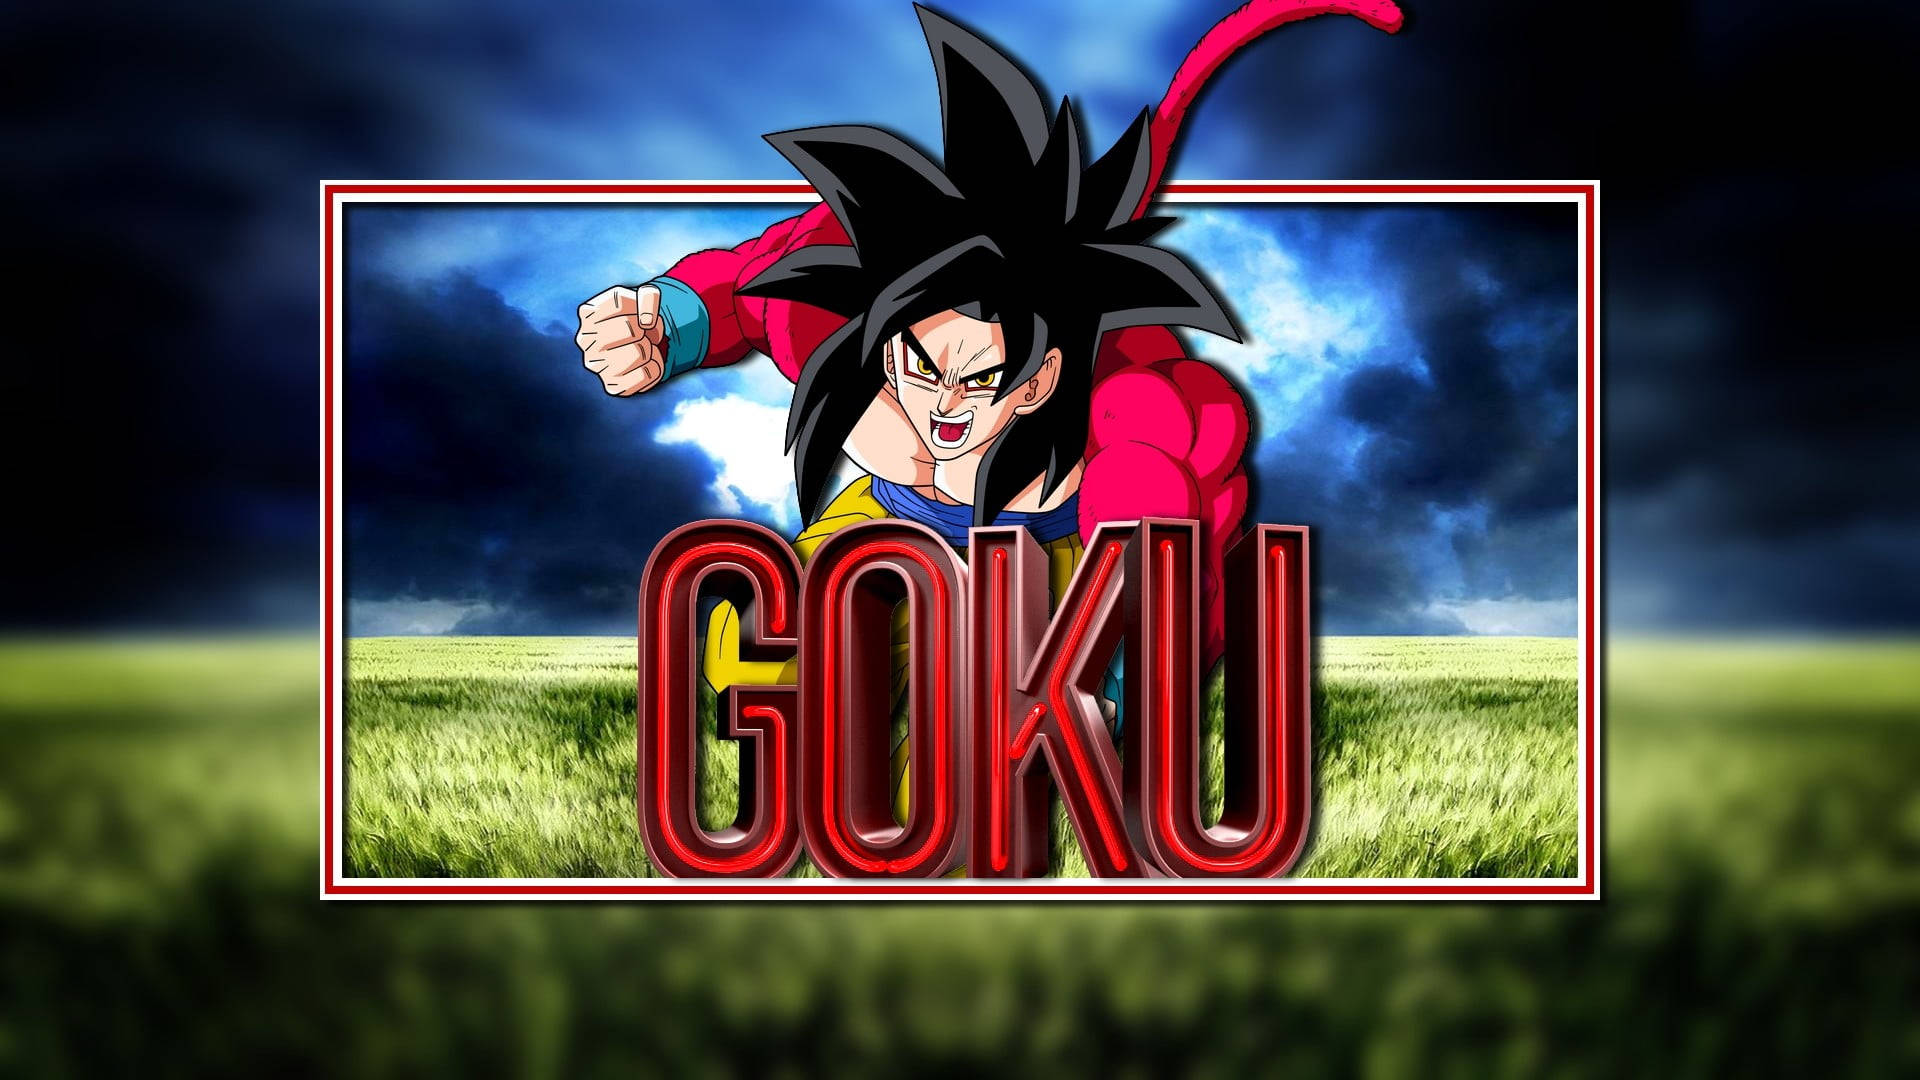 Ssj4 Goku Pictures Wallpaper